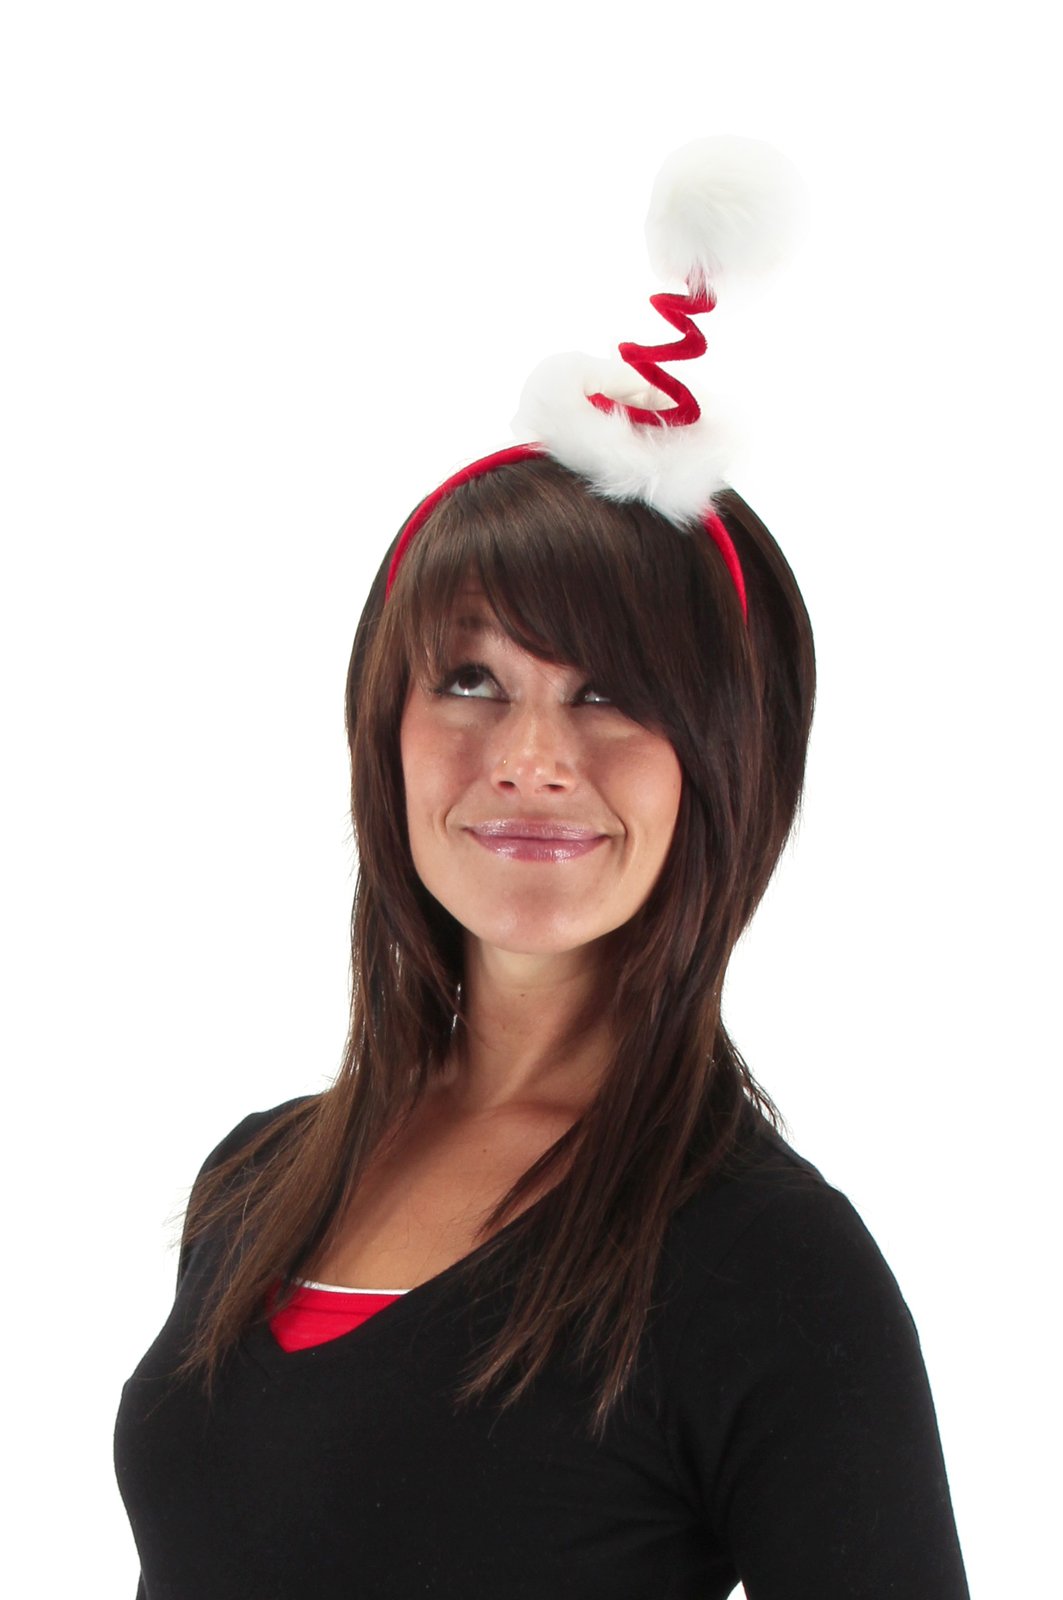 Cocktail Springy Santa Headband